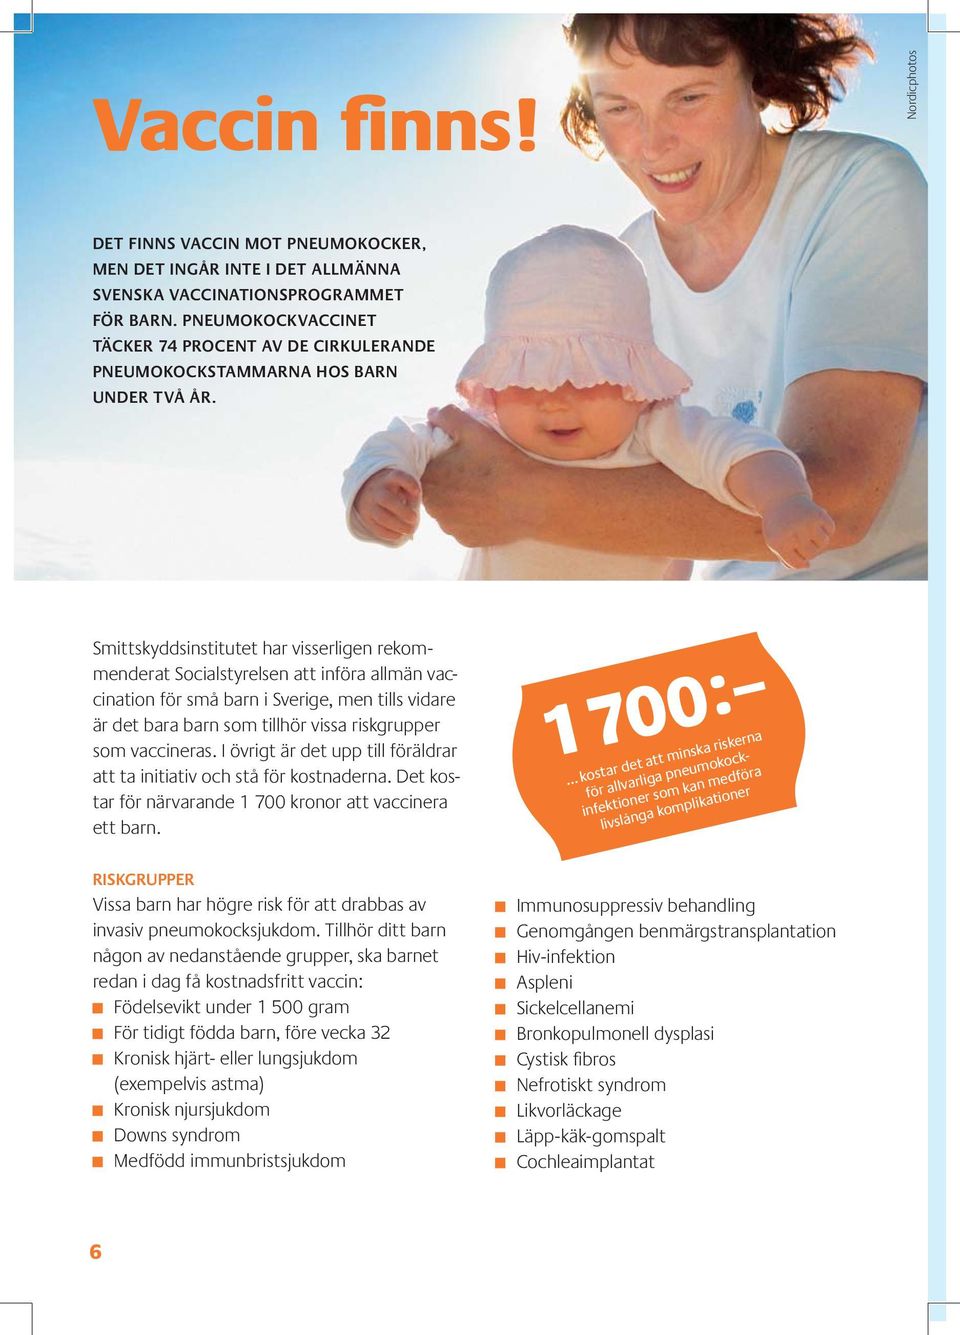 Smittskyddsinstitutet har visserligen rekommenderat Socialstyrelsen att införa allmän vaccination för små barn i Sverige, men tills vidare är det bara barn som tillhör vissa risk grupper som